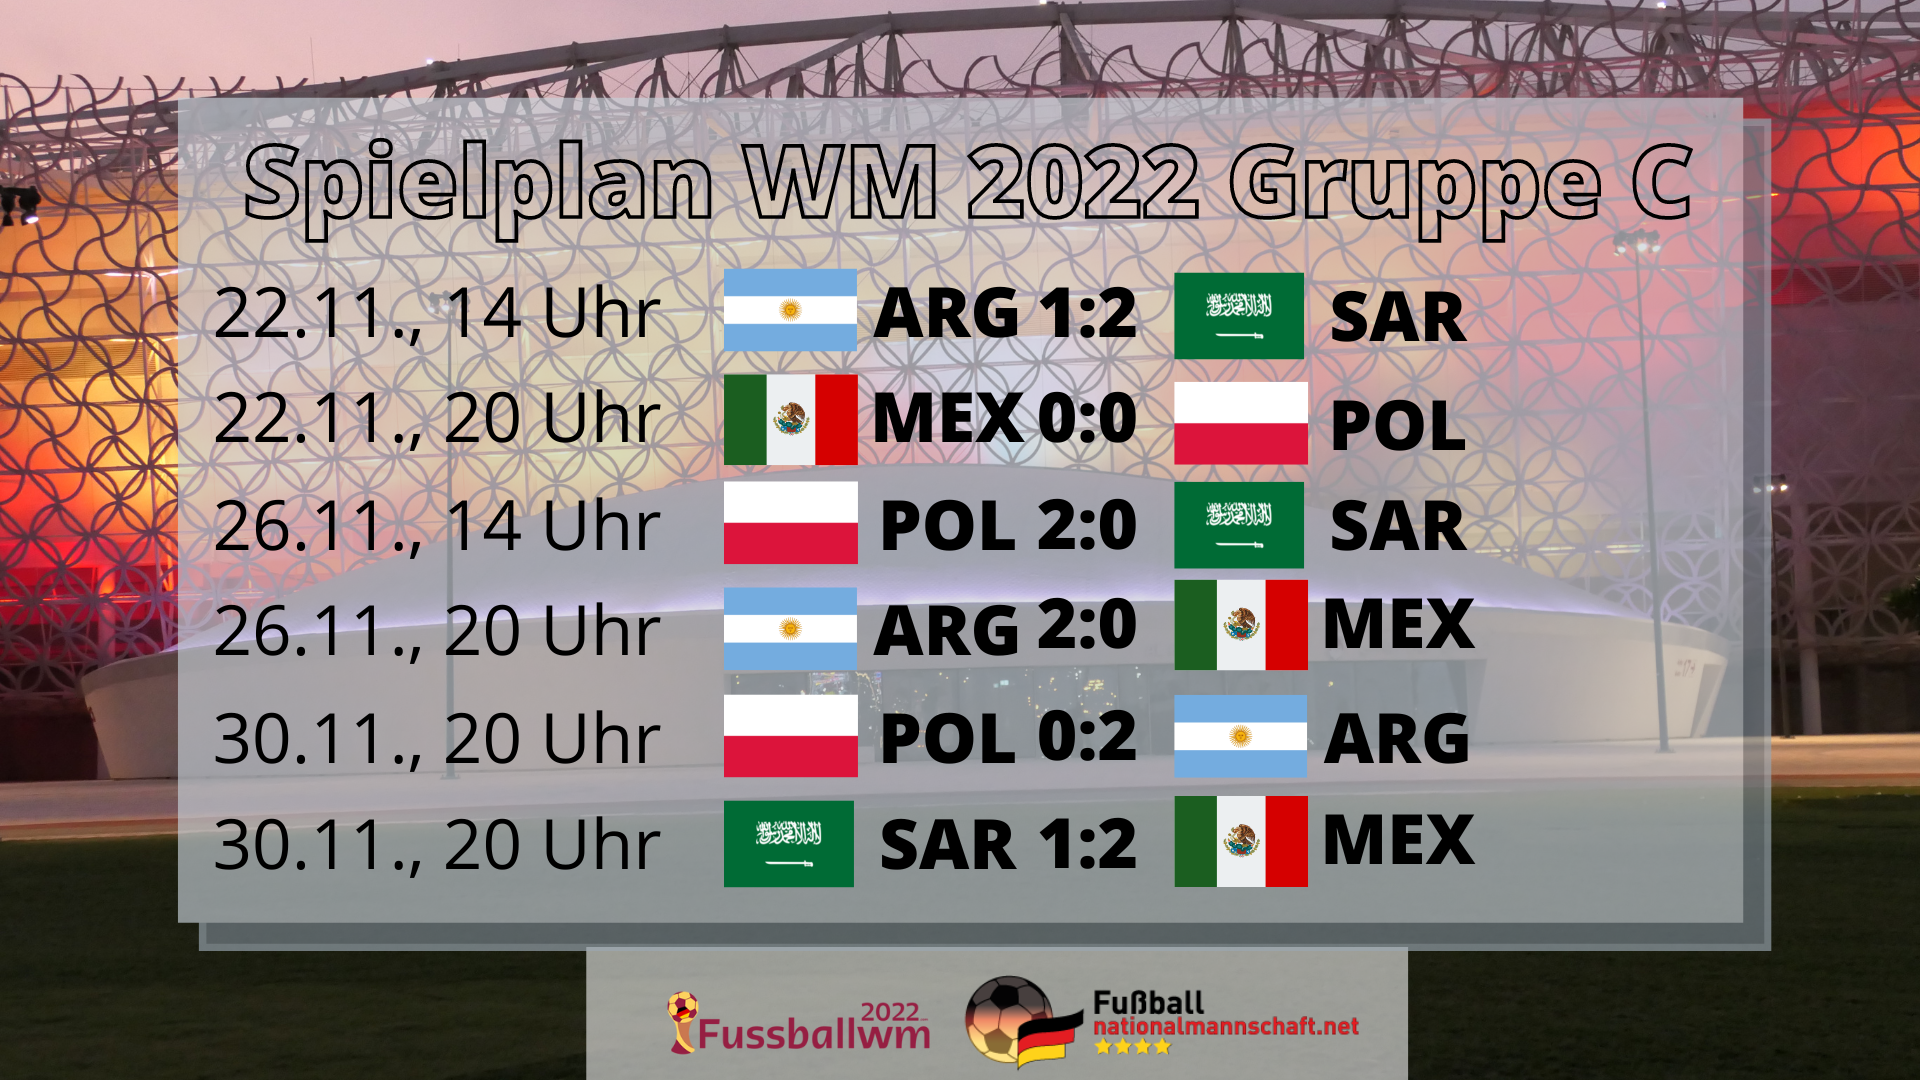 WM 2022 Gruppe C Spielplan and Tabelle mit Argentinien and Mexiko